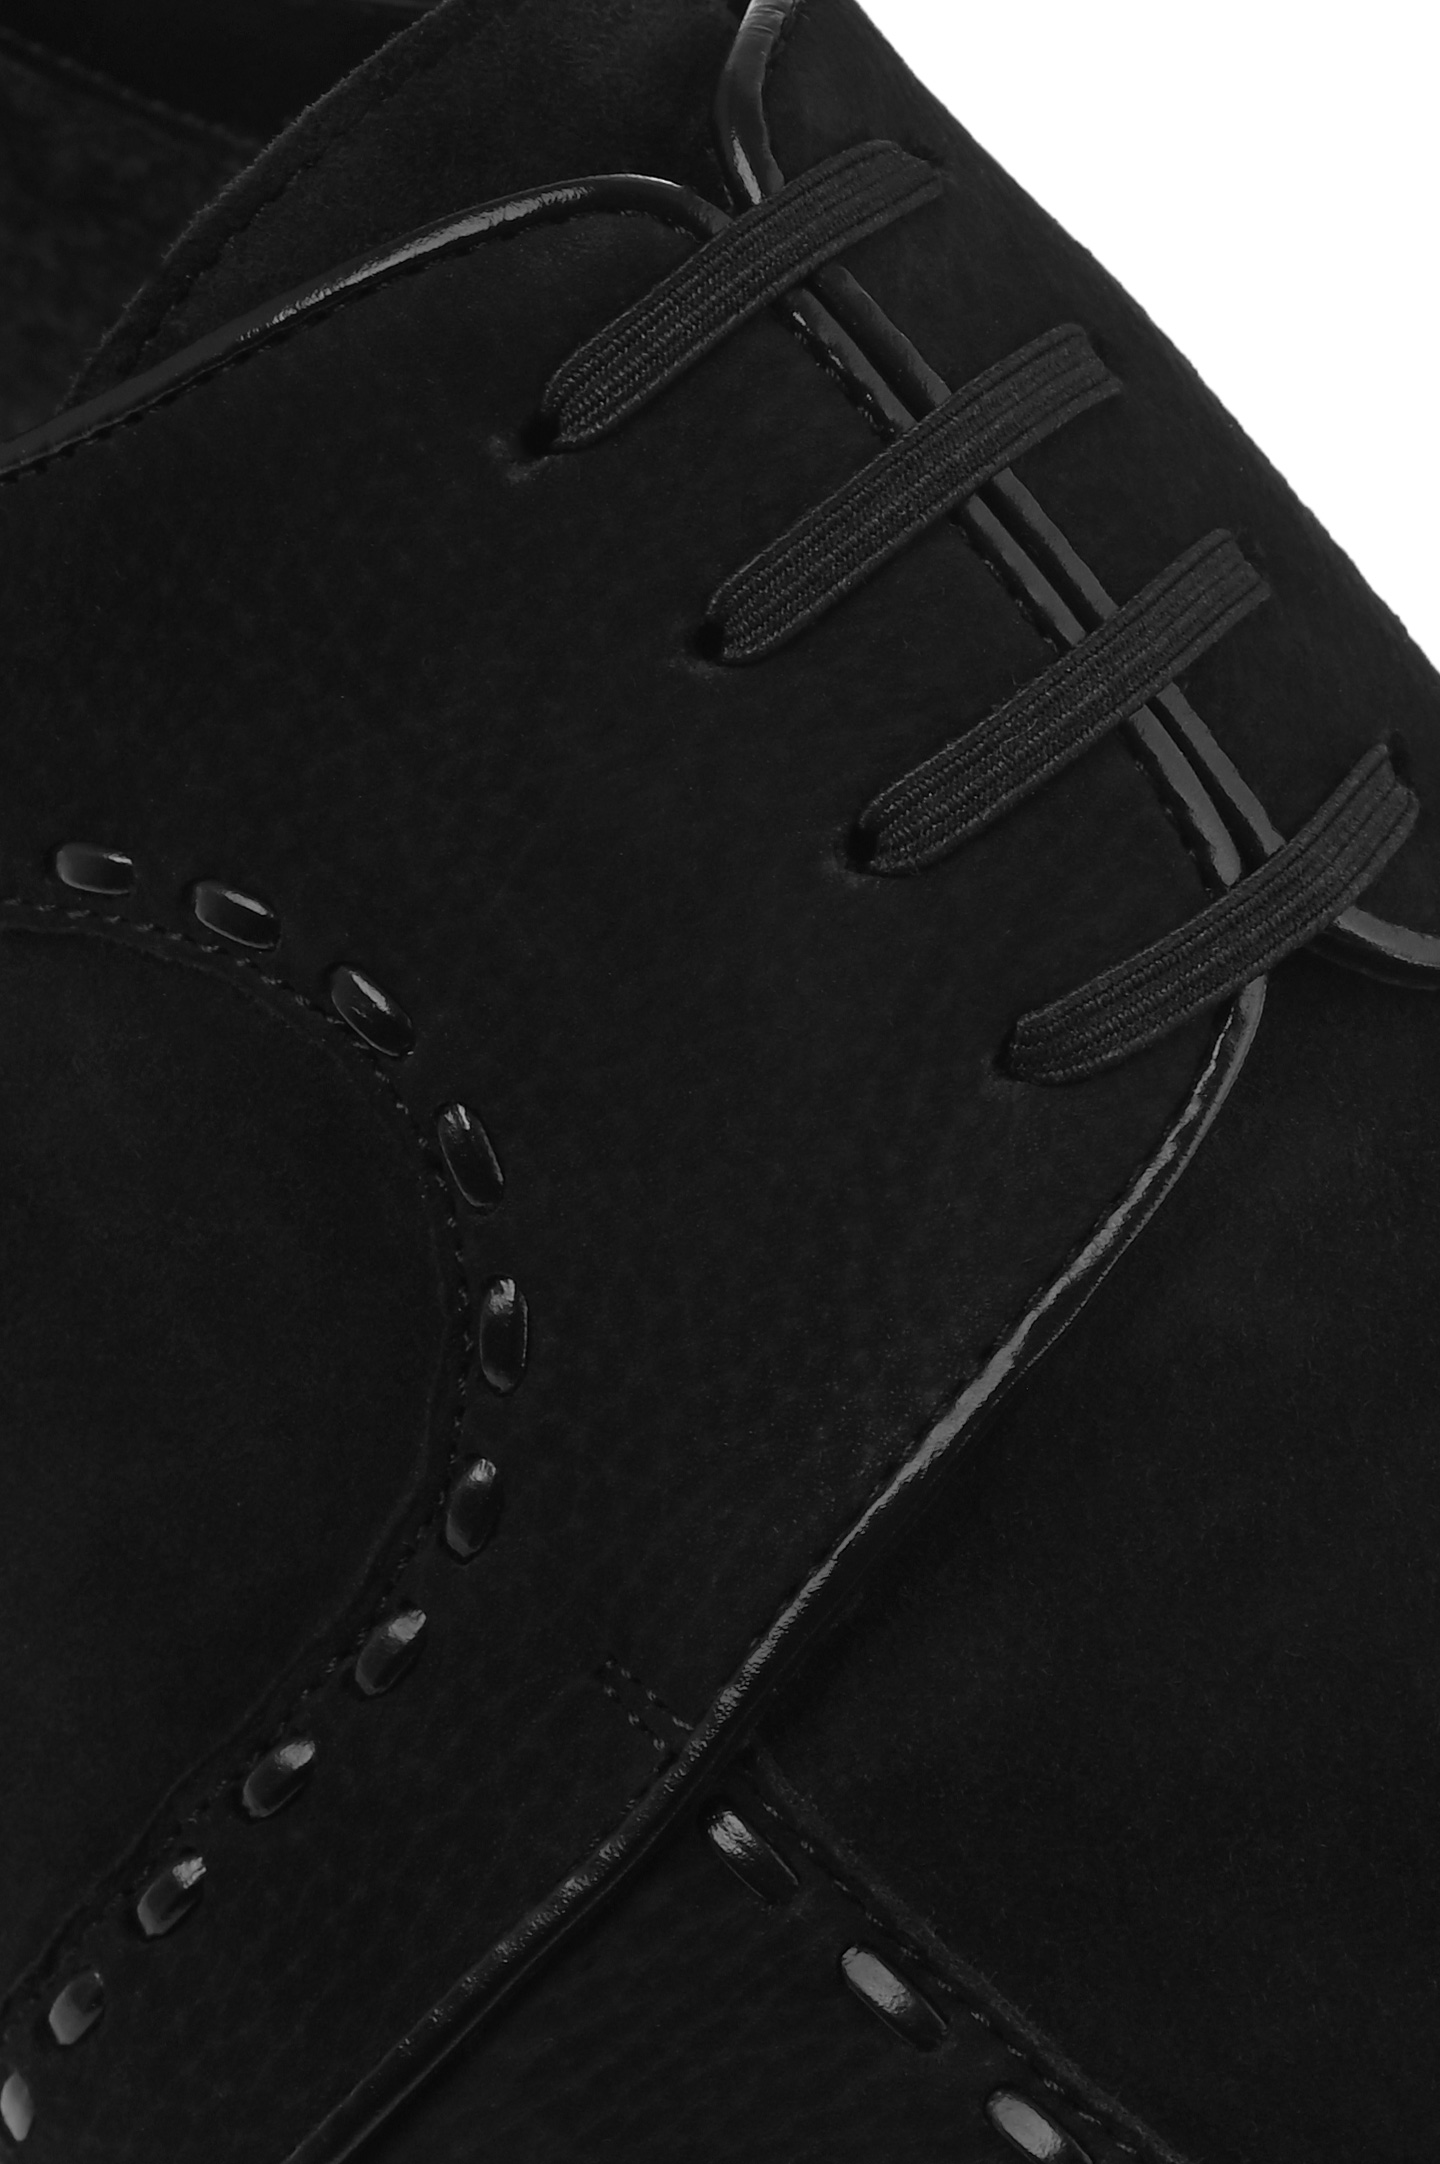 Туфли ARTIOLI 06S421, цвет: Черный, Мужской